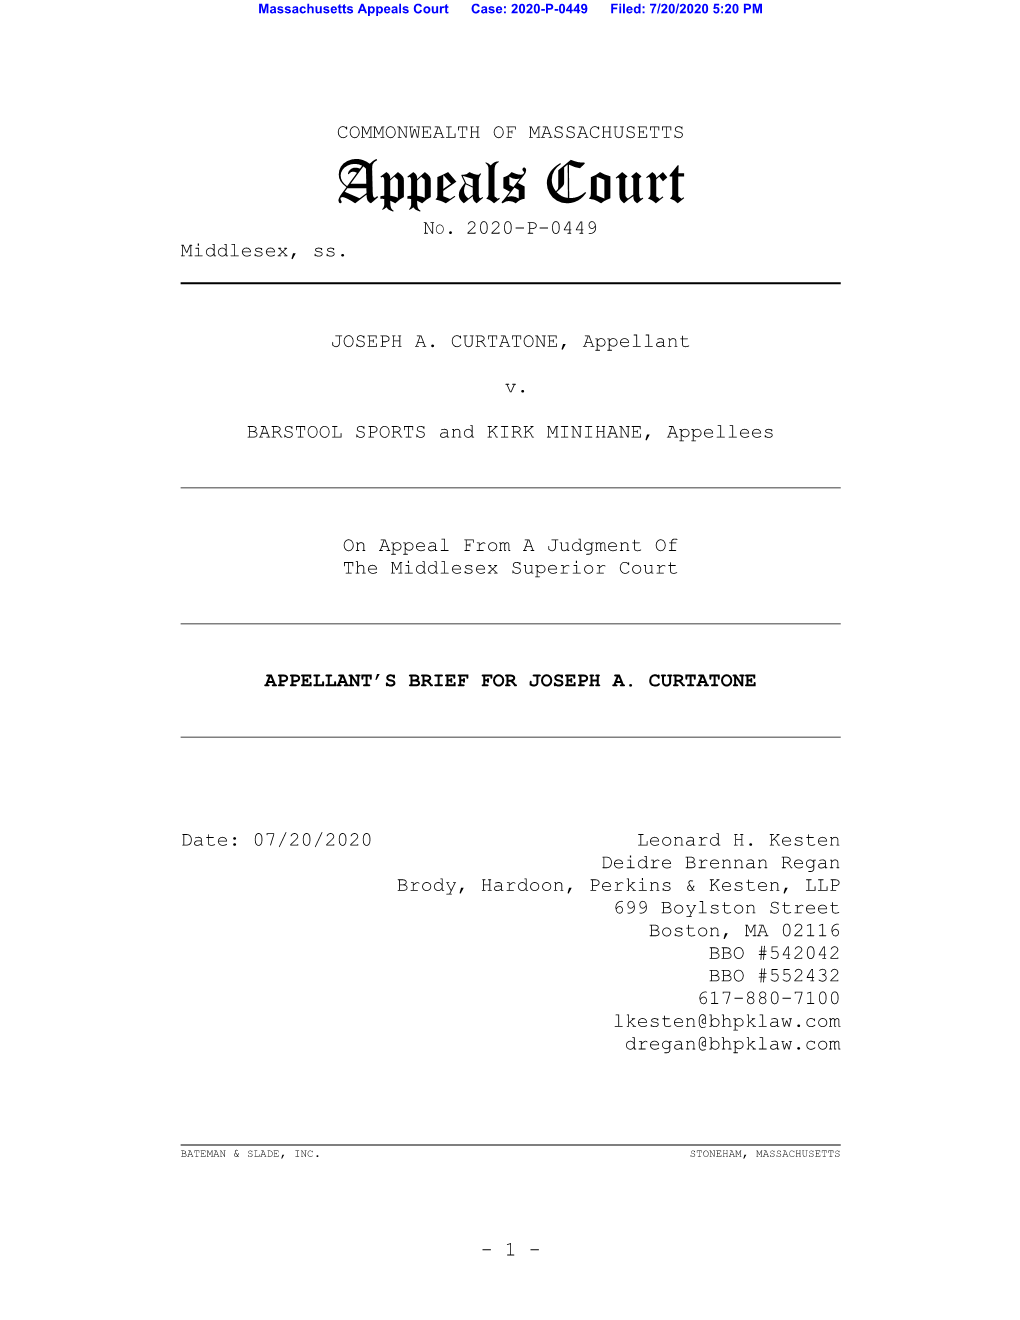 Appeals Court Case: 2020-P-0449 Filed: 7/20/2020 5:20 PM